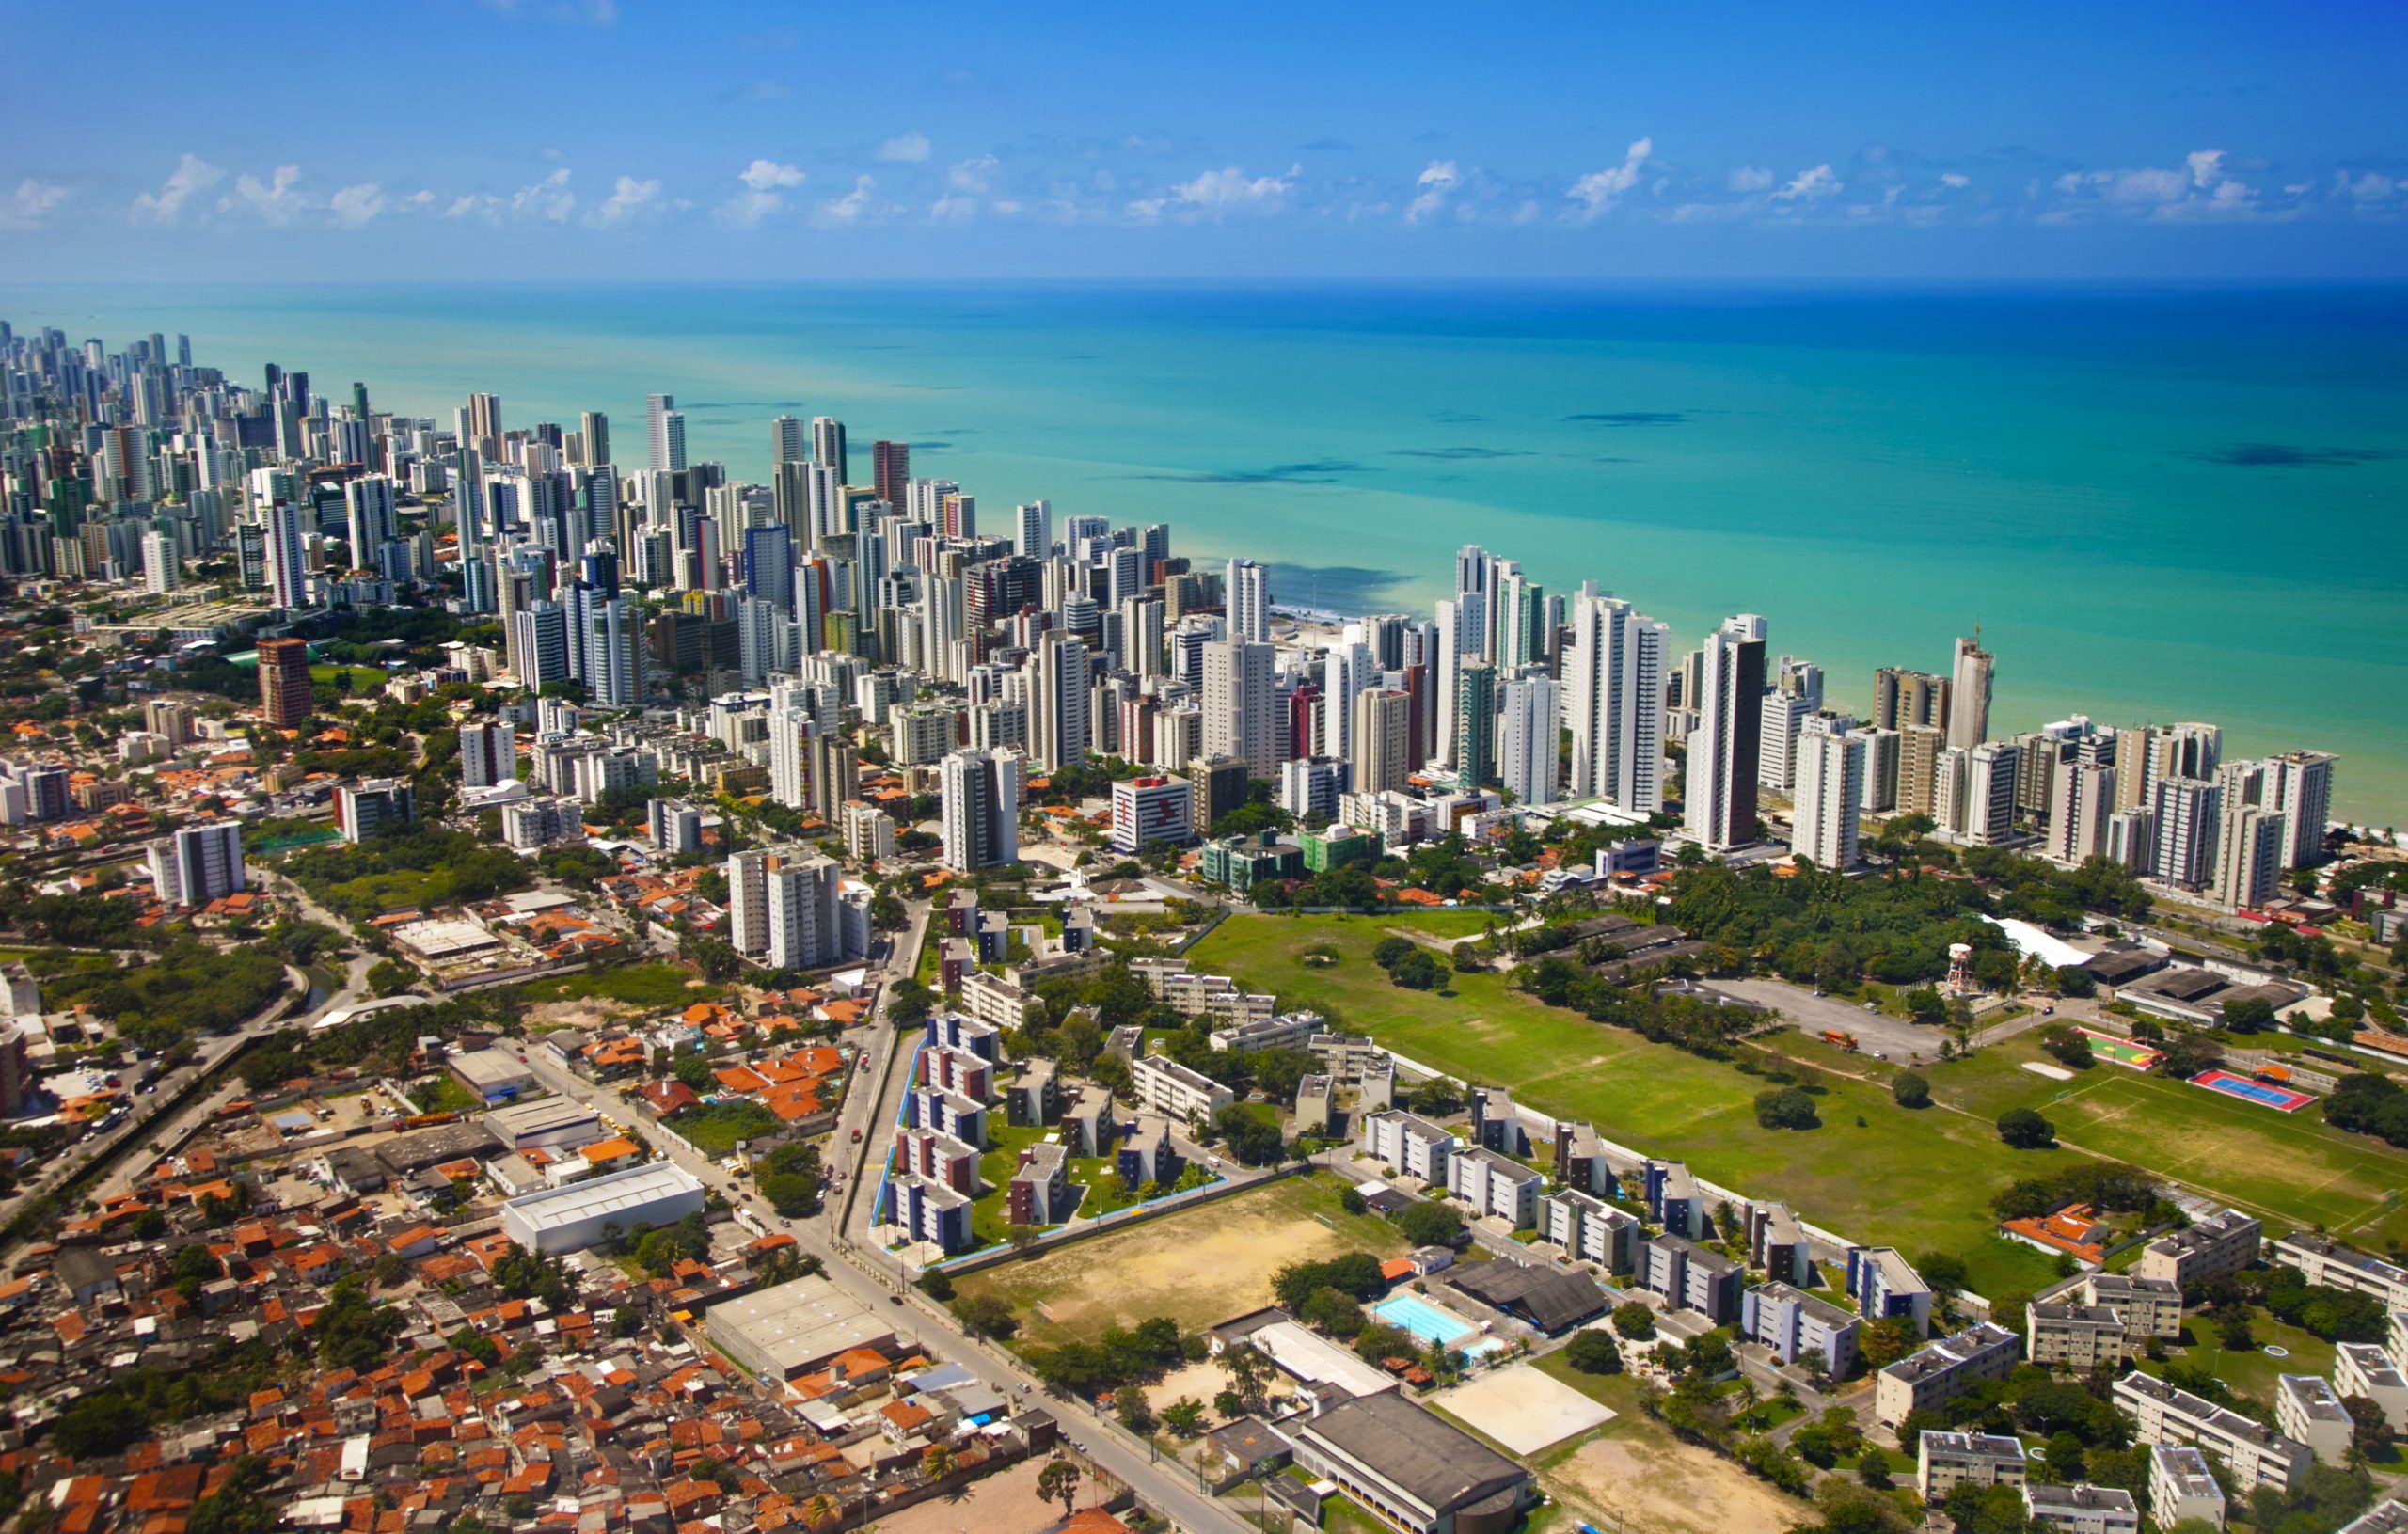 Skyline view of Recife